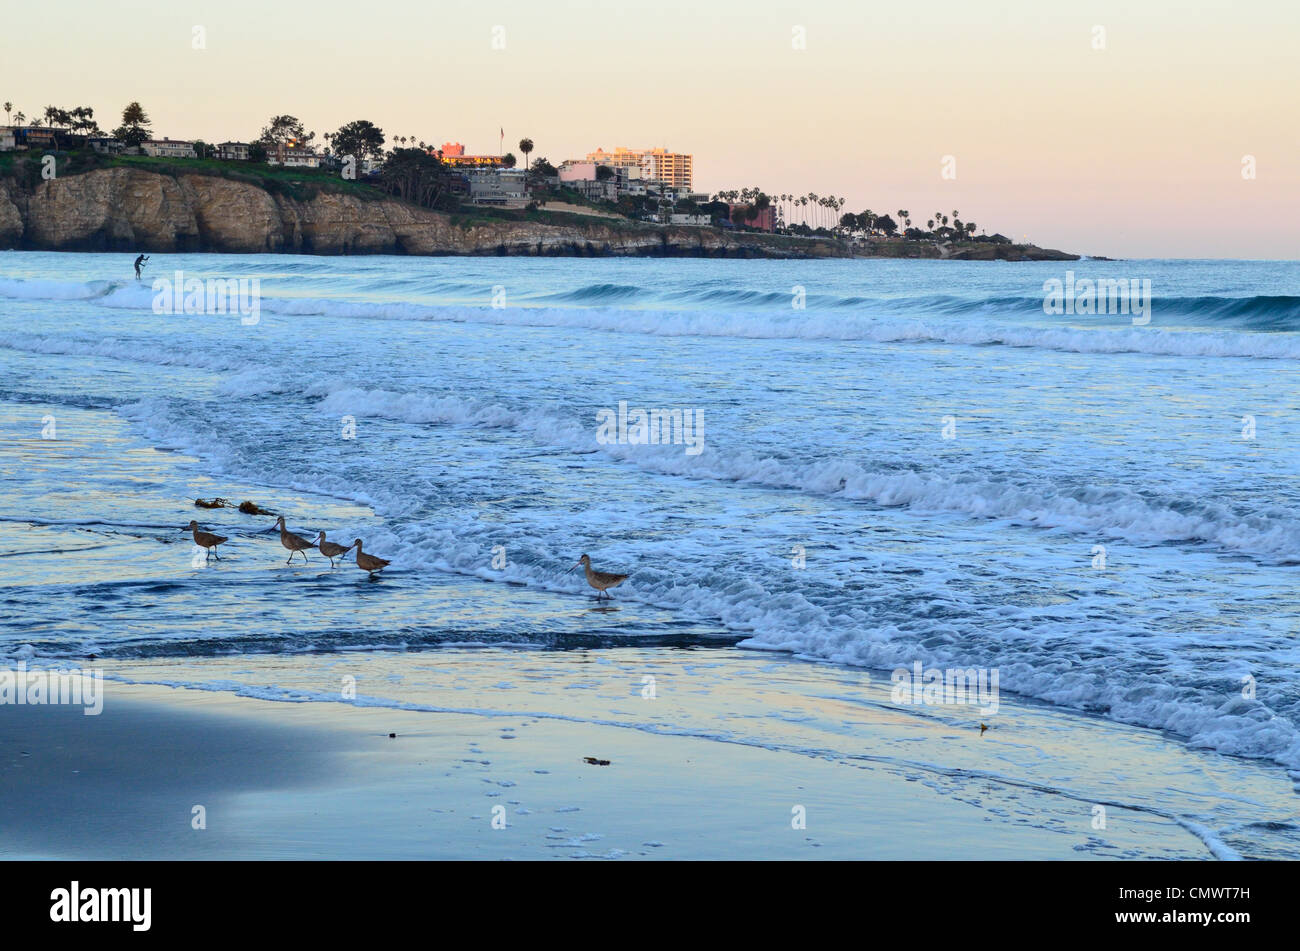 Alimentación de aves marinas a lo largo de playa de arena. La Jolla, California, Estados Unidos. Foto de stock